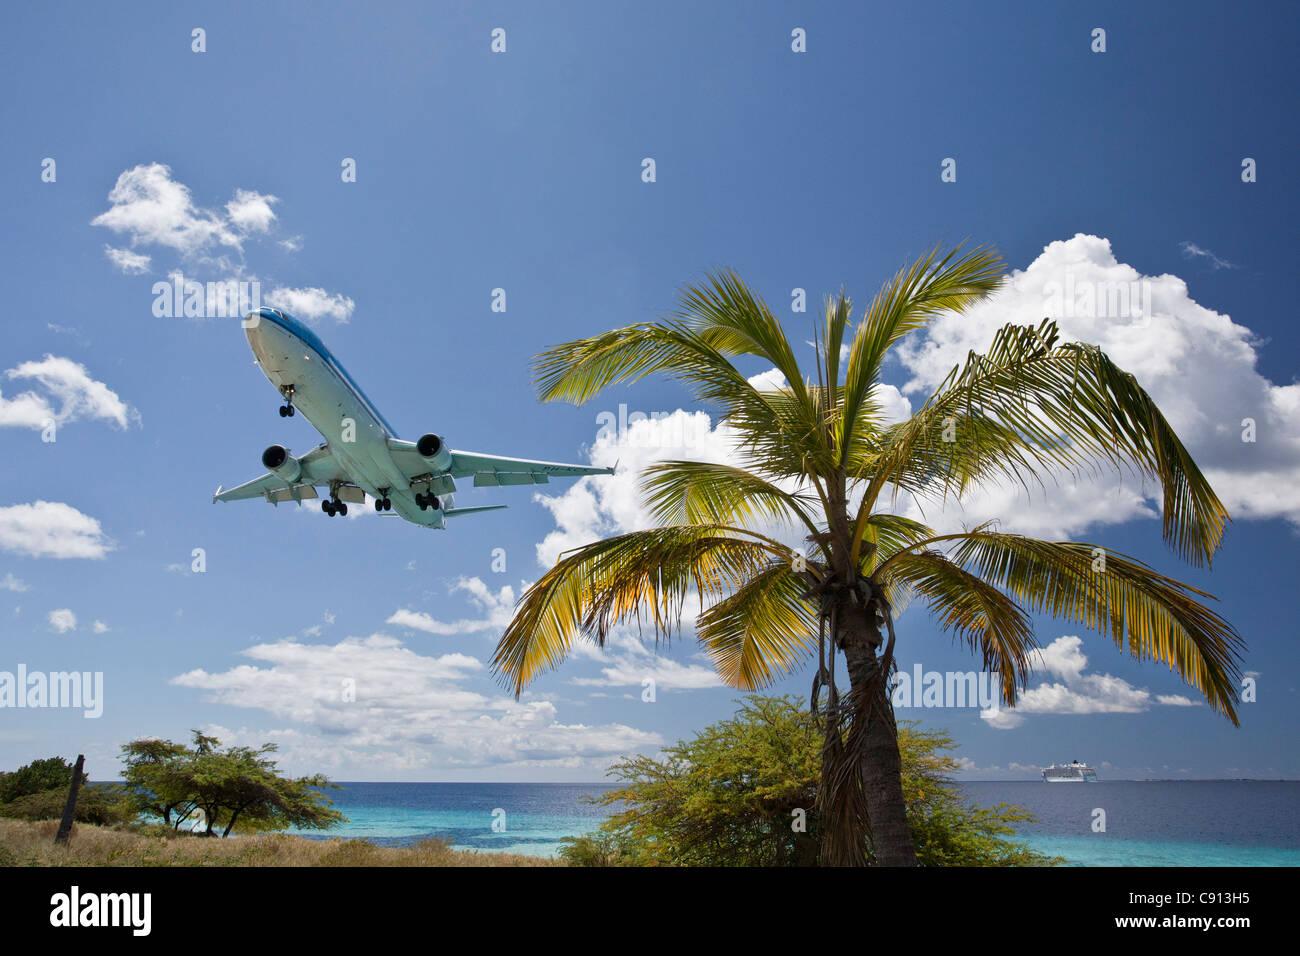 Les Pays-Bas, l'île de Bonaire, Antilles néerlandaises, Kralendijk, KLM Douglas DC-10, avion à l'atterrissage à l'aéroport de Flamingo. Banque D'Images